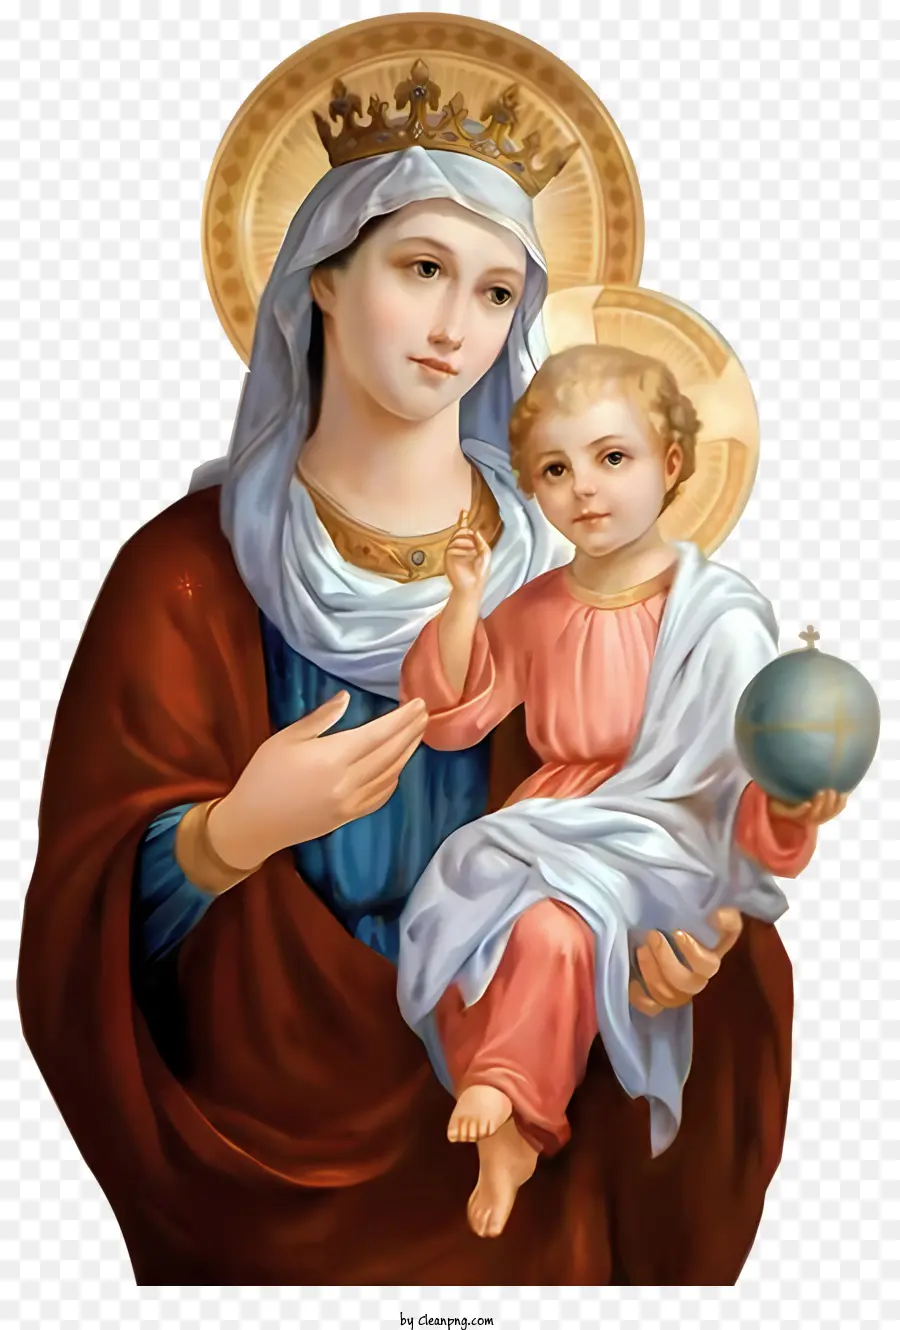 corona - Vergine Maria che tiene il bambino Gesù, amore simbolico